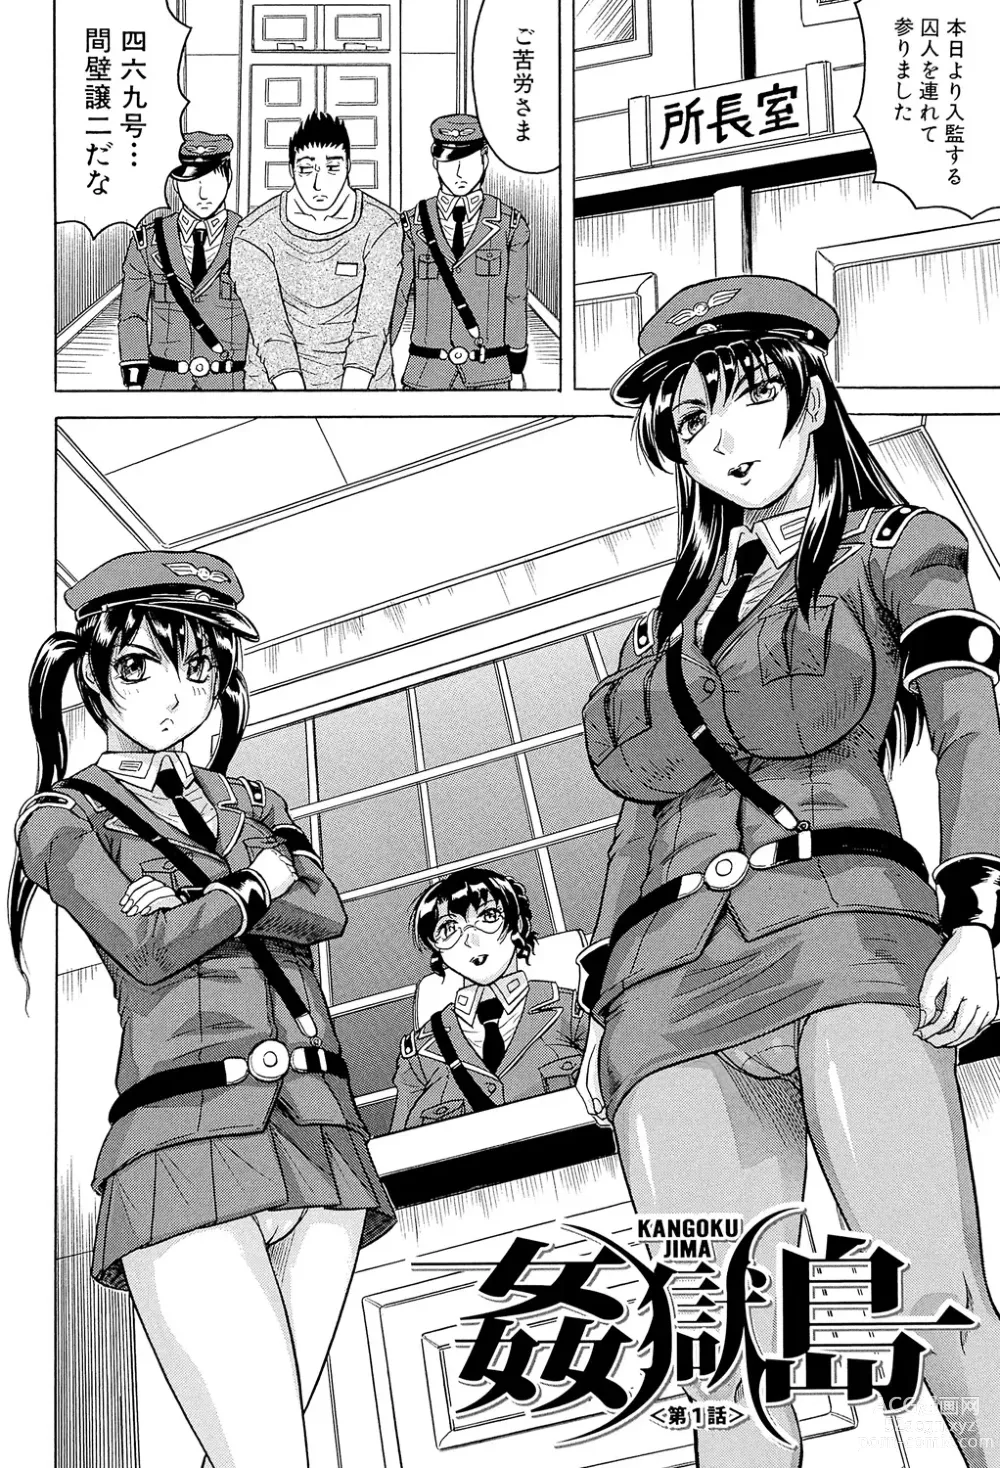 Page 8 of manga Kangokujima